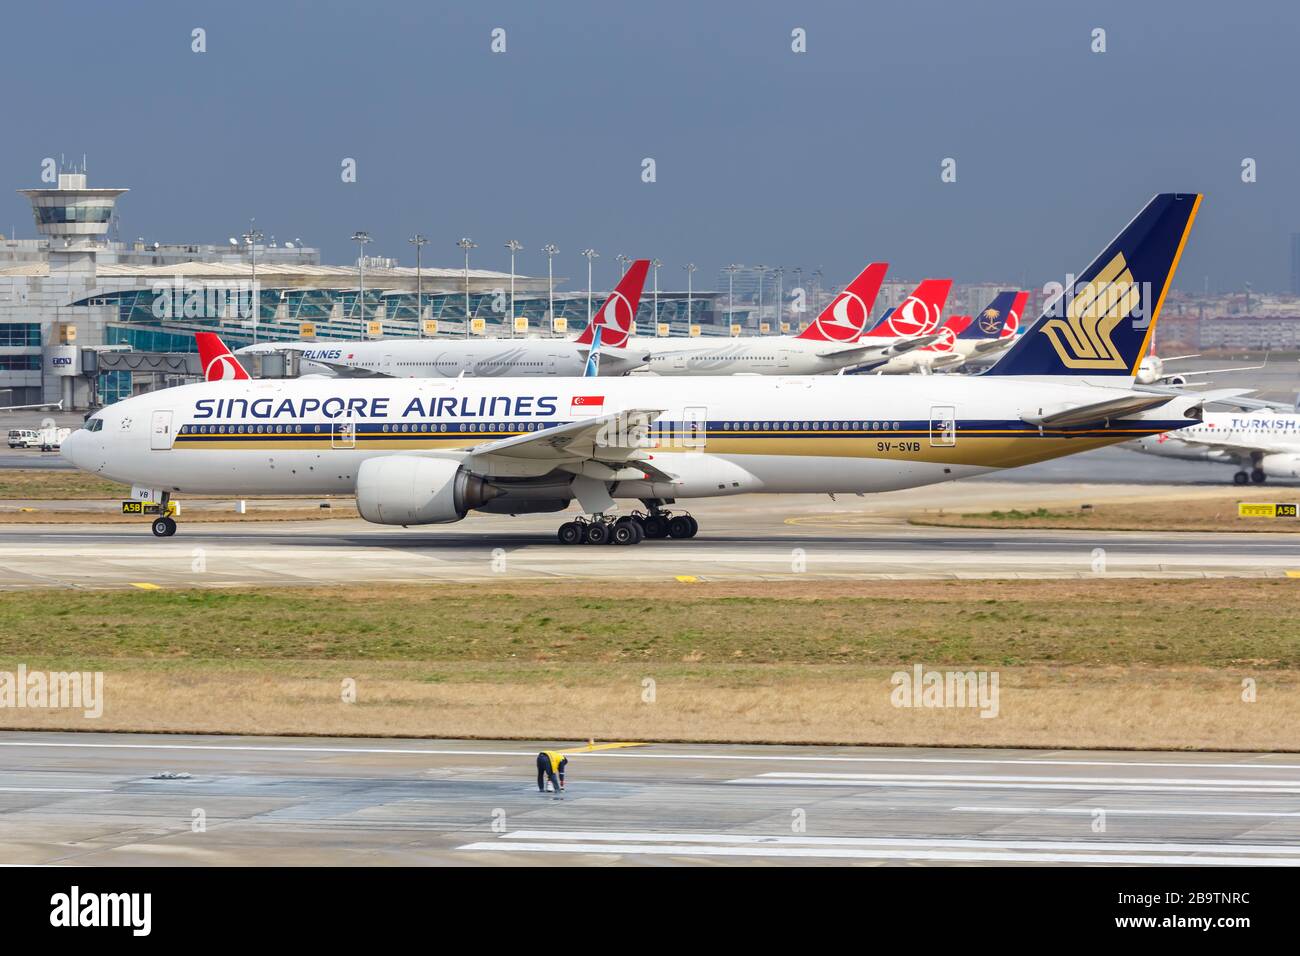 Istanbul, Turchia – 15 febbraio 2019: Singapore Airlines Boeing 777 aereo all'aeroporto Ataturk di Istanbul (IST) in Turchia. Boeing è un aircra americano Foto Stock